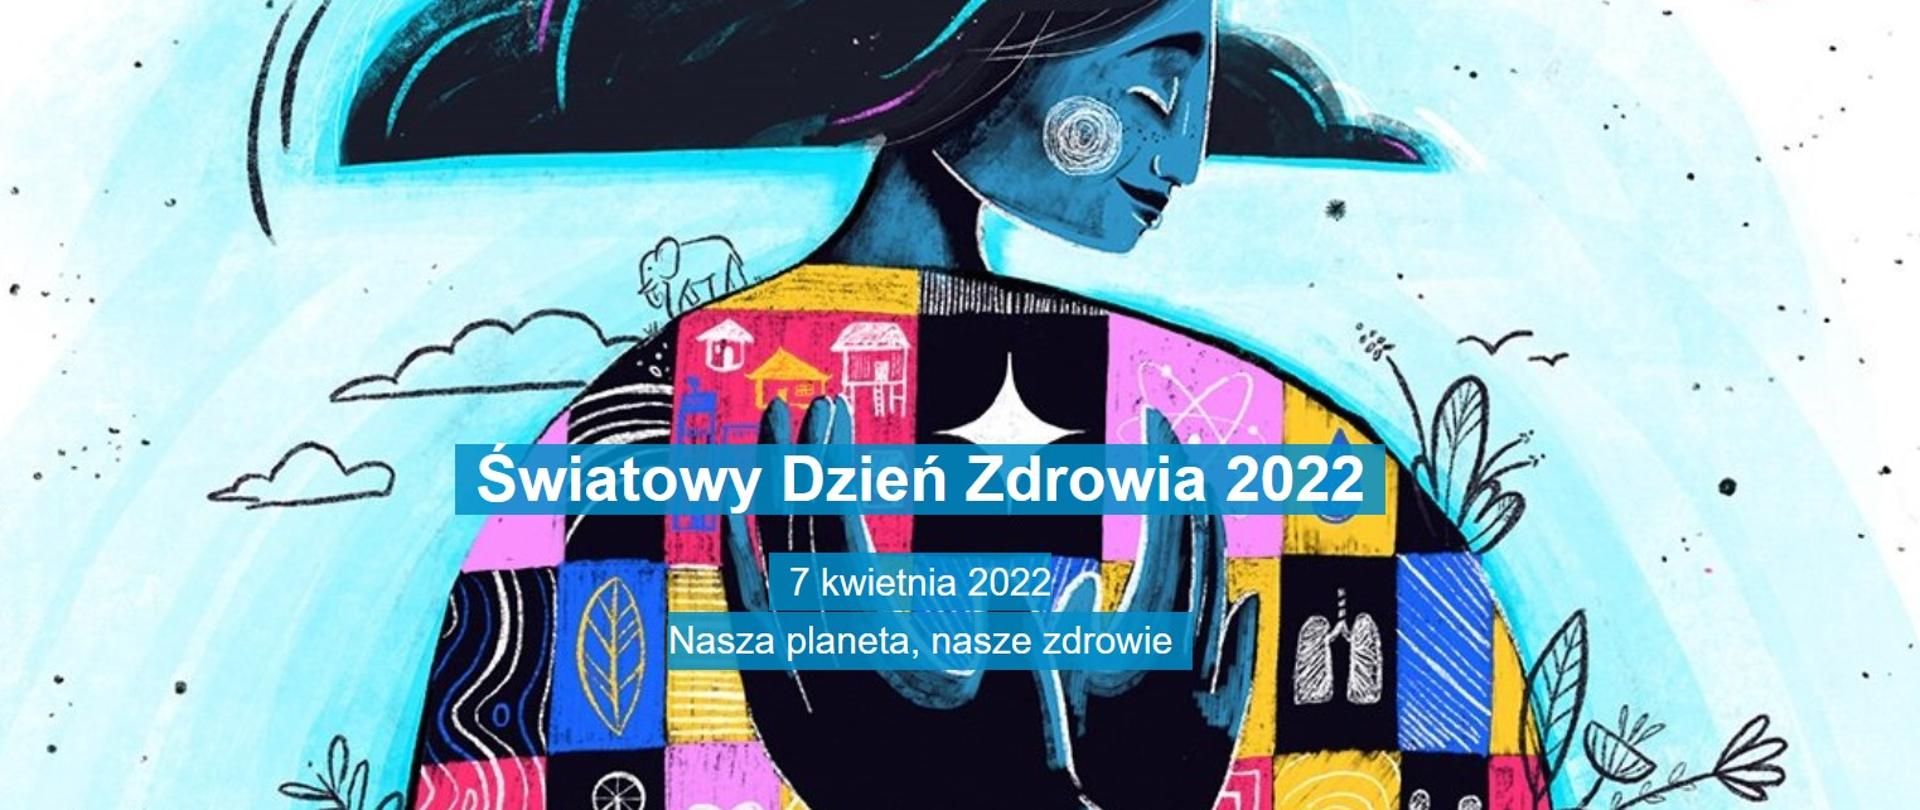 BANER ŚWIATOWY DZIEŃ ZDROWIA 2022